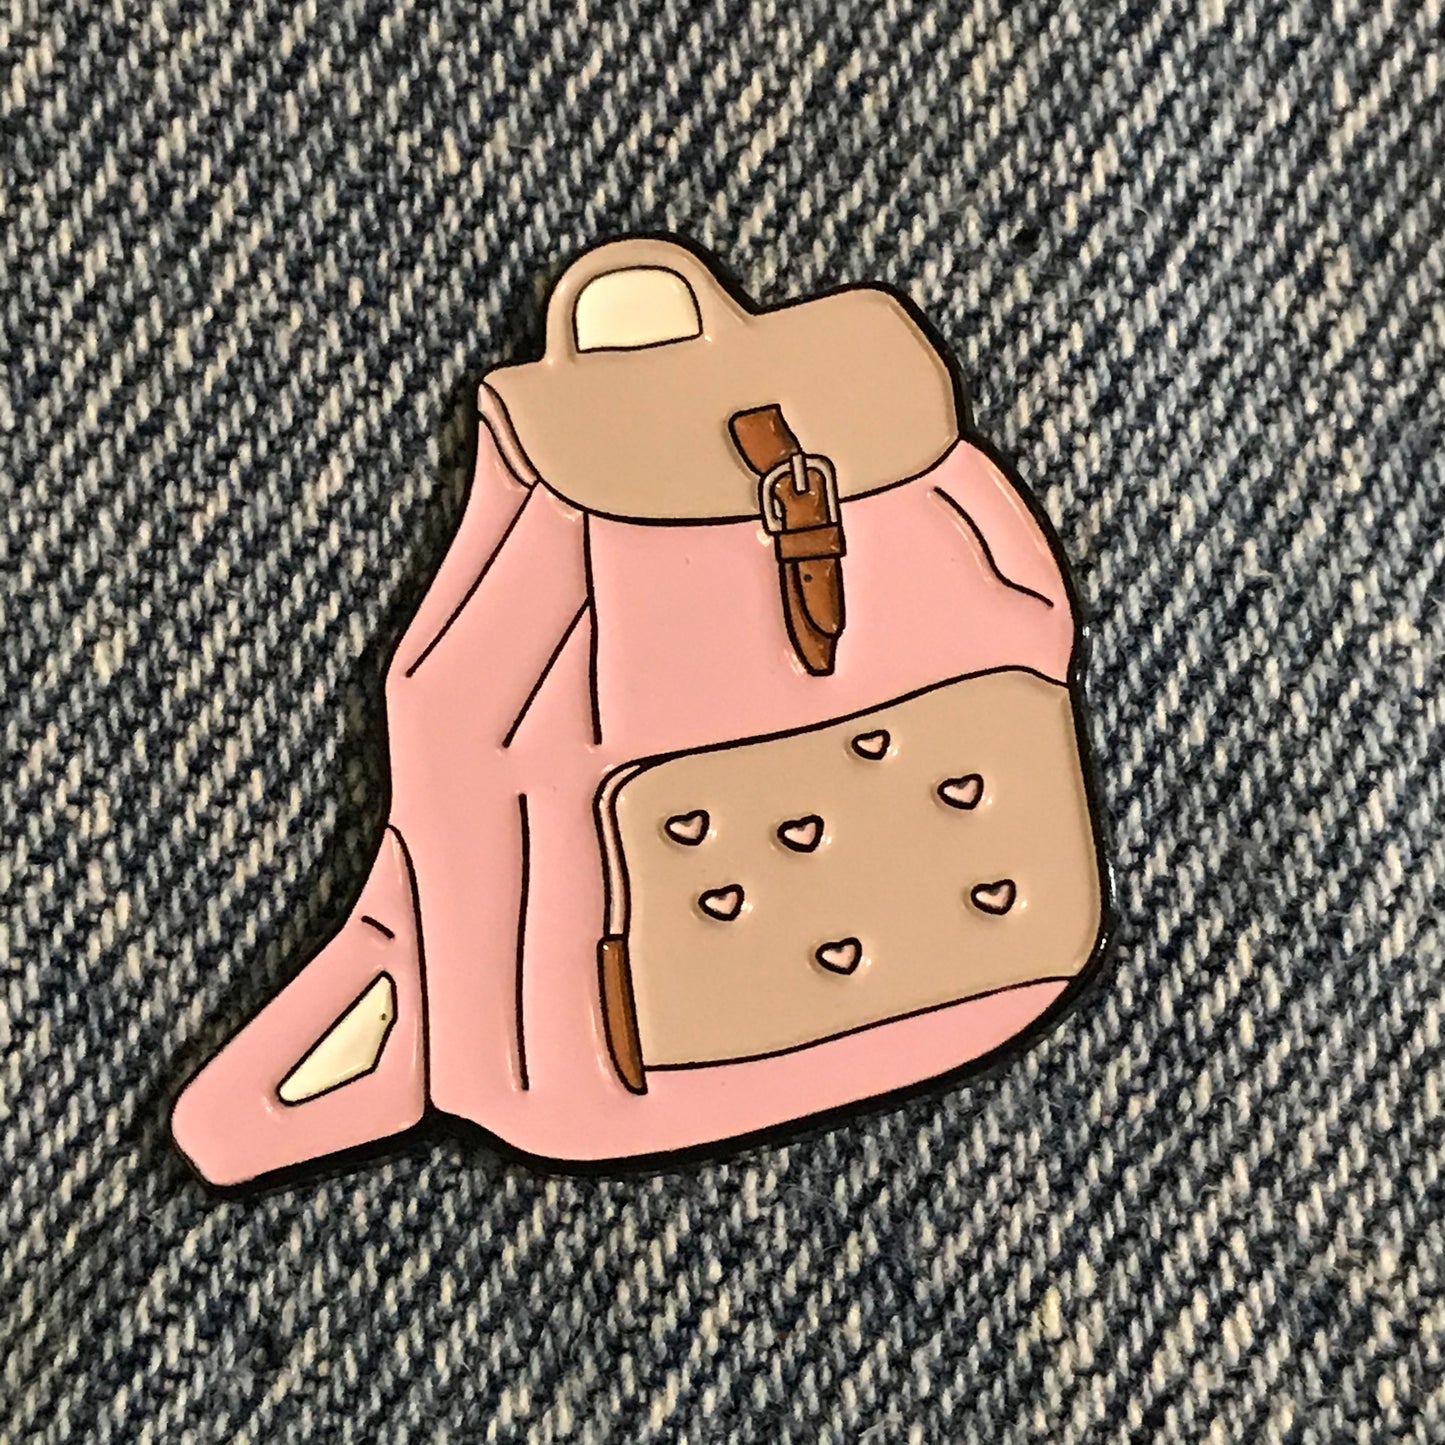 Pink Back Pack Enamel Pin, Fun pin